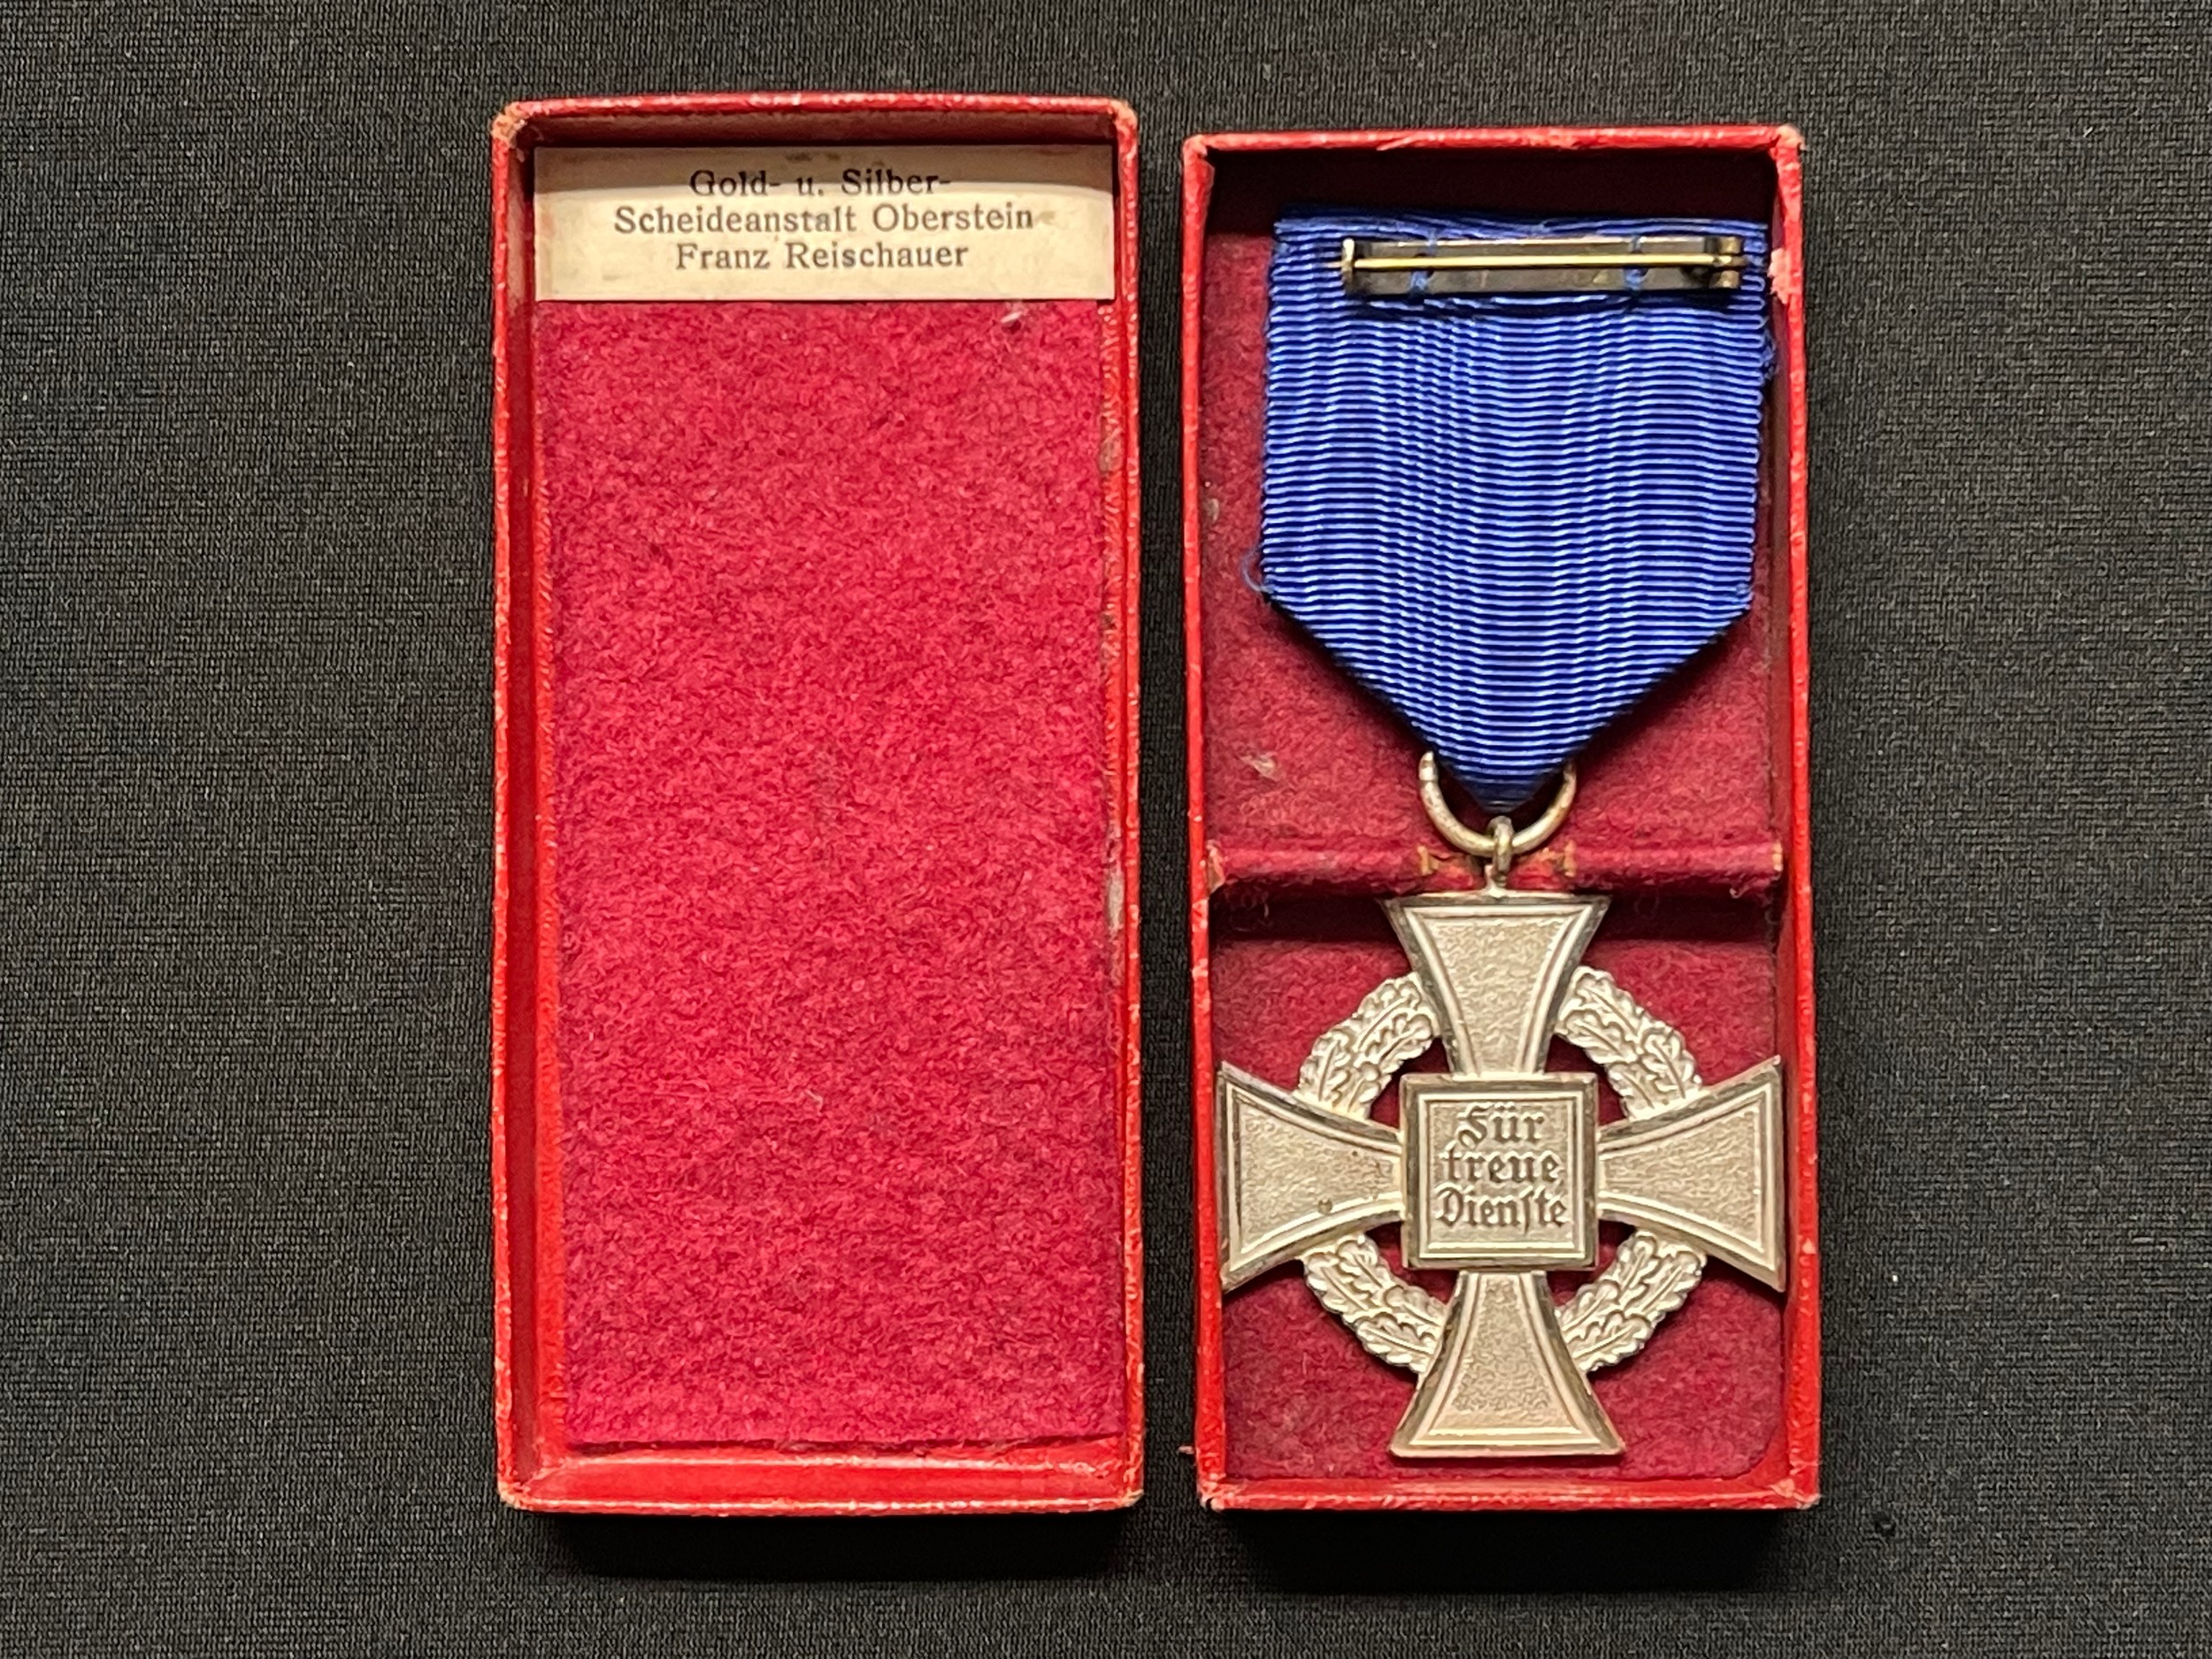 WW2 Third Reich Treue Dienst Ehrenzeichen, 25 Jahre - Faithful Service Award, 25 years. Complete - Image 2 of 4